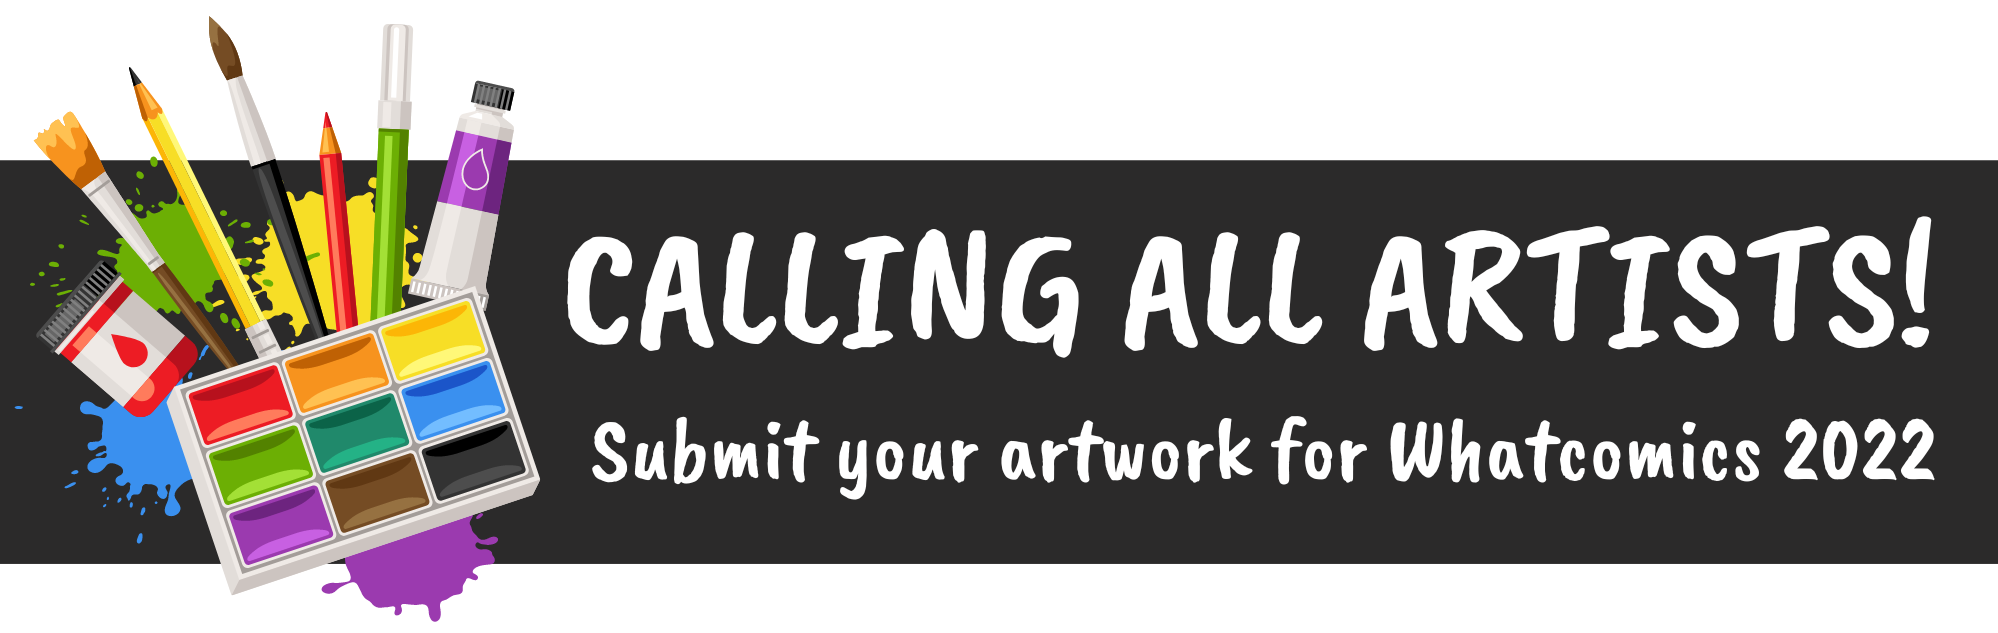 Calling All Artists, Whatcomics 2022, Art Supplies